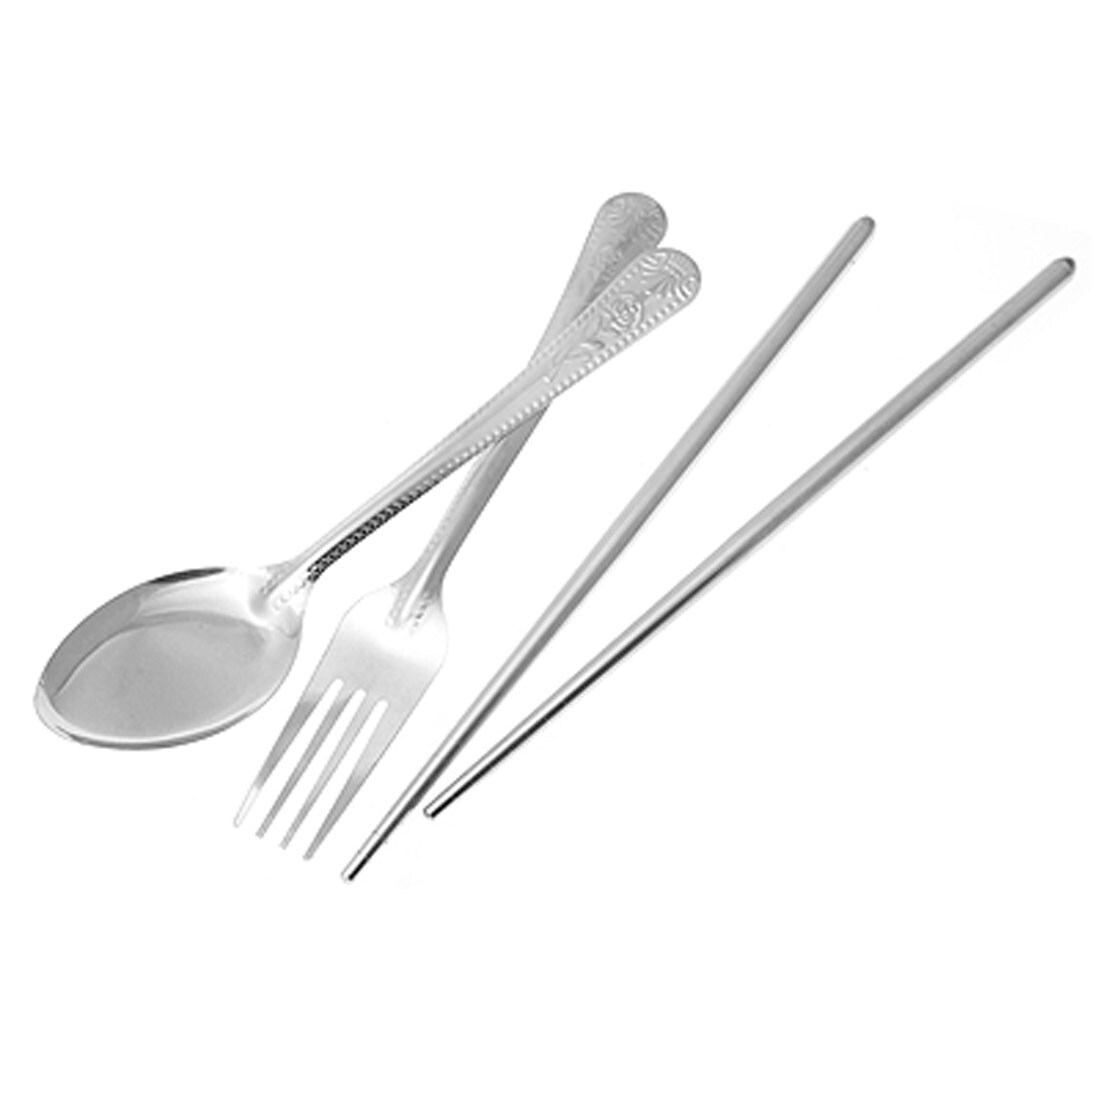 unique chopsticks set